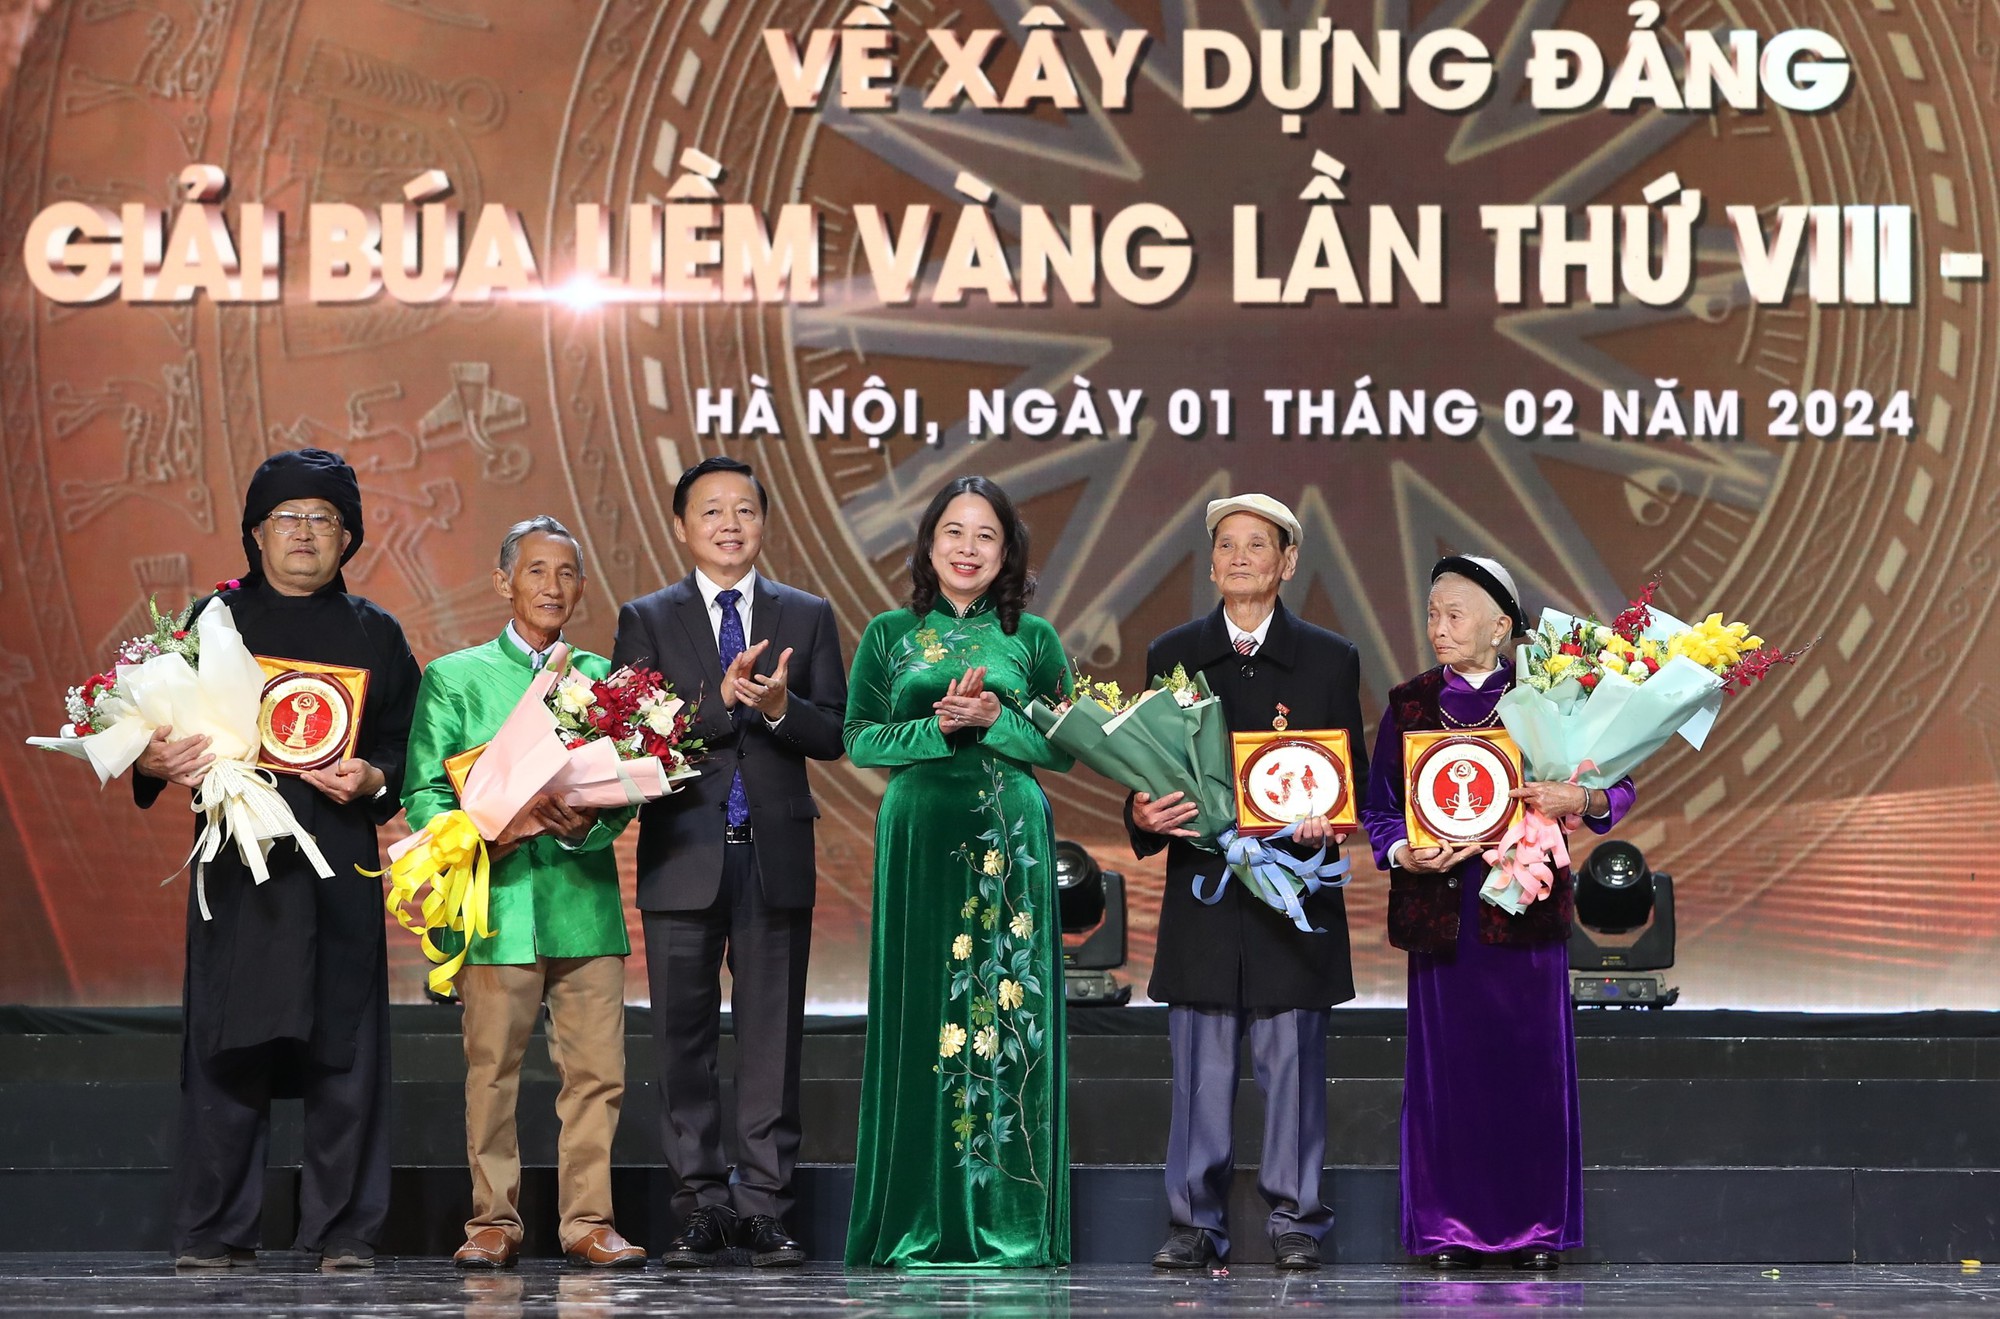 Thủ tướng Phạm Minh Chính: Phải đặc biệt coi trọng và đẩy mạnh hơn nữa công tác xây dựng Đảng- Ảnh 9.